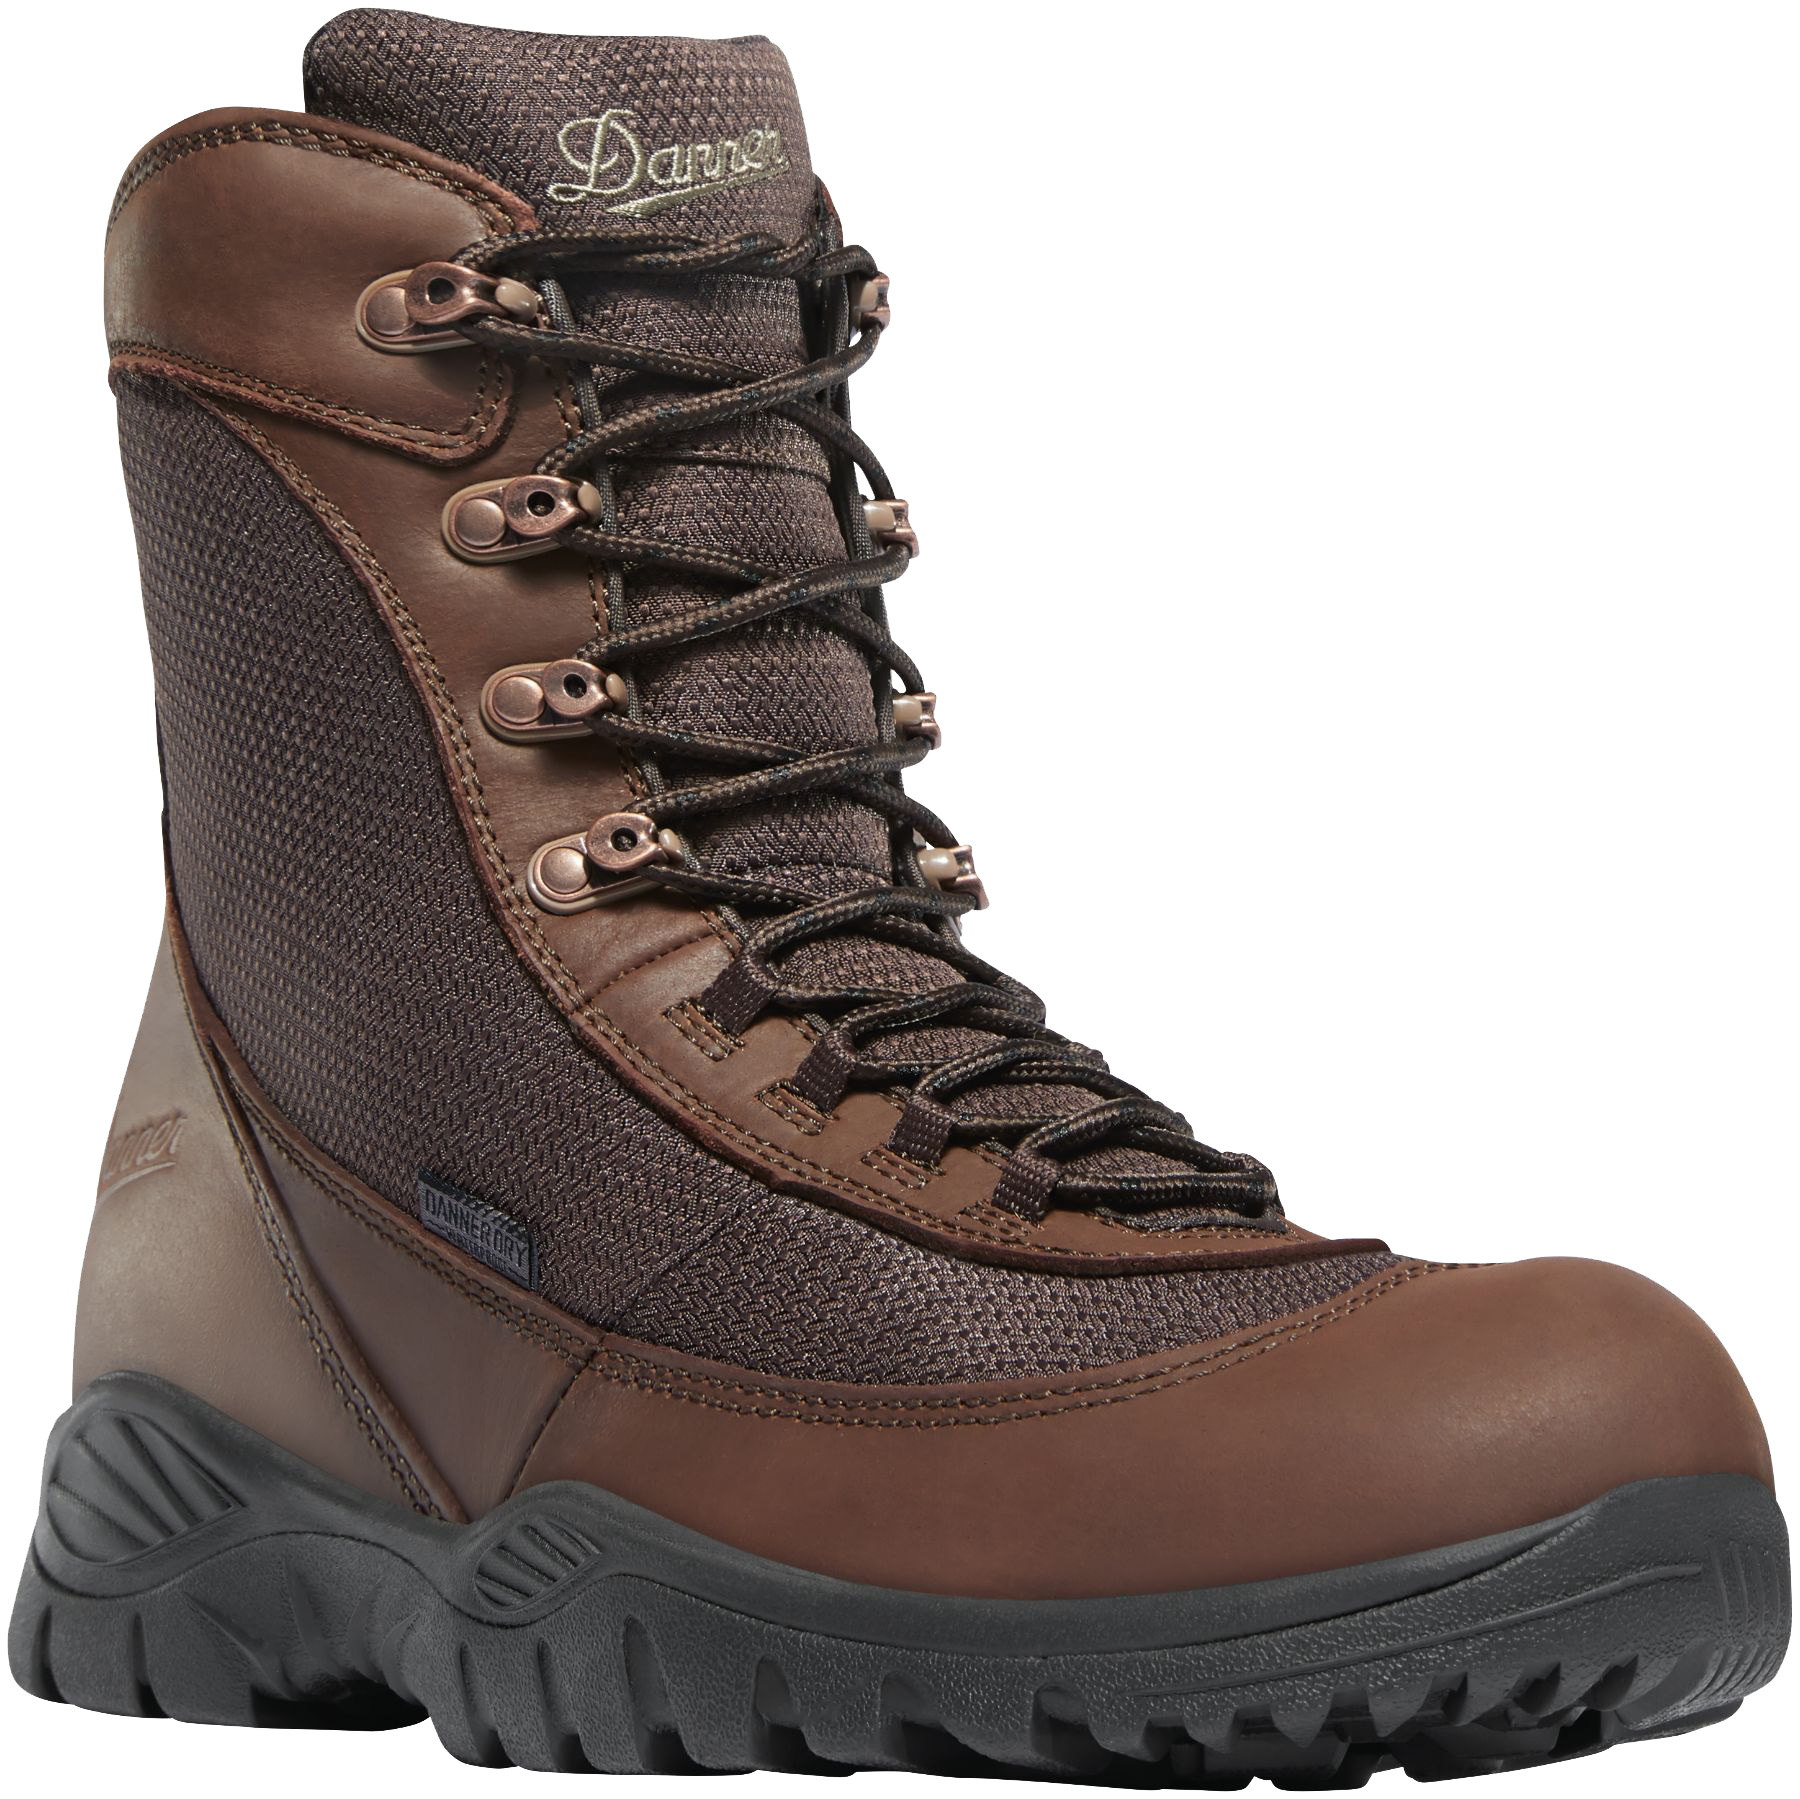 Danner Men's Element 8in Waterproof Hunting Boots - Brown 12 -  47130-12EE